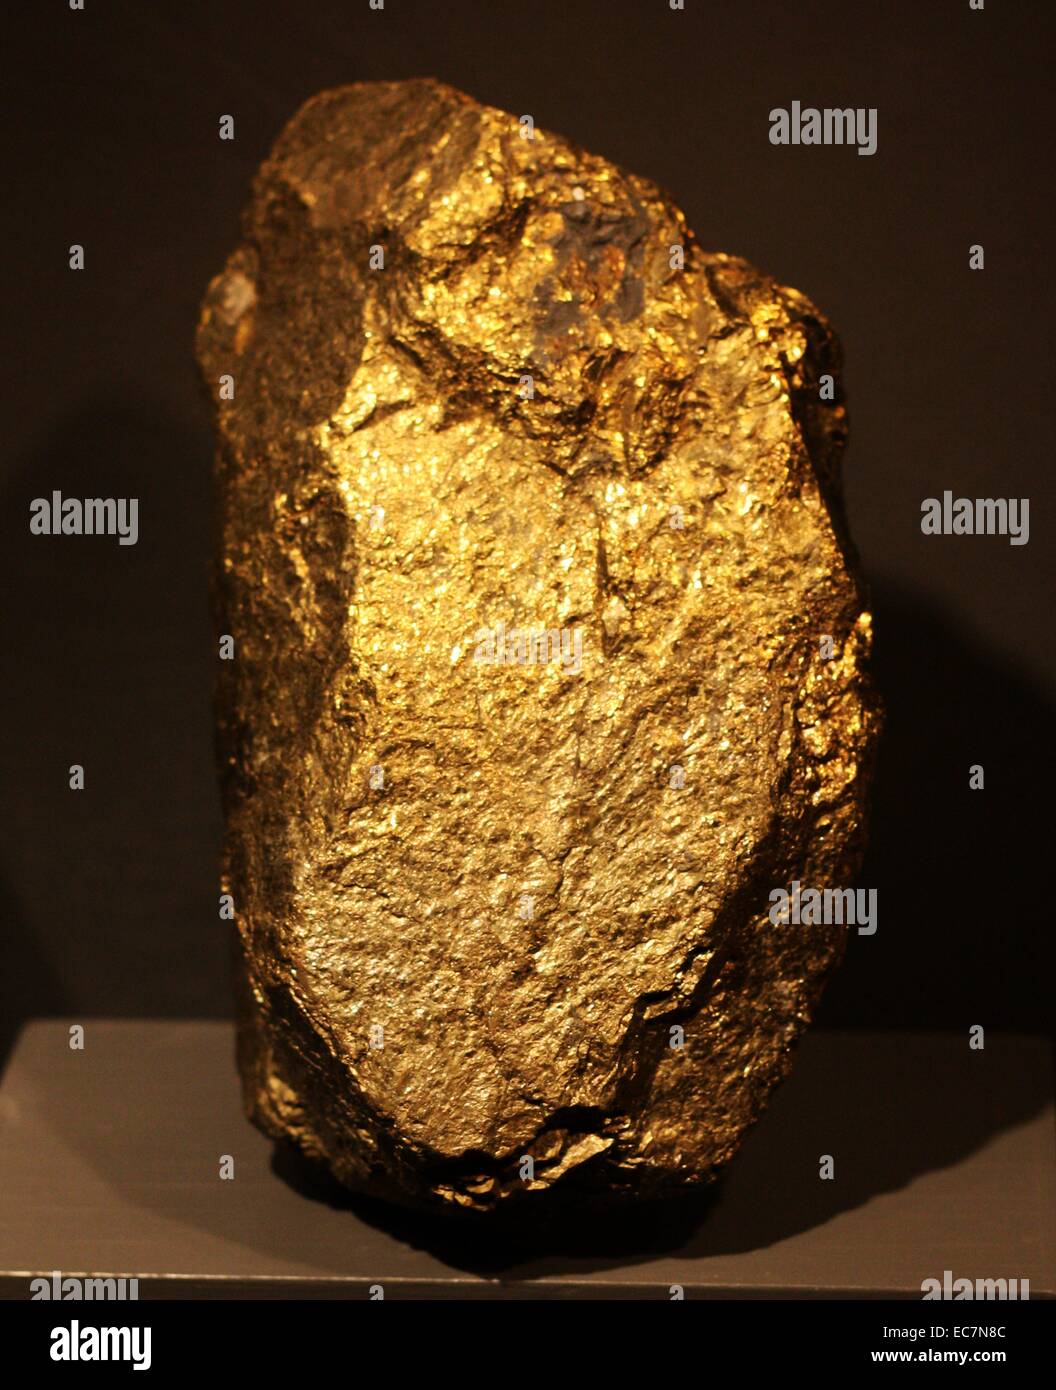 Calcopirita es un mineral de sulfuro de cobre hierro que cristaliza en el sistema tetragonal. A brassy tiene un color amarillo dorado y una dureza de 3,5 a 4 en la escala de Mohs. Foto de stock